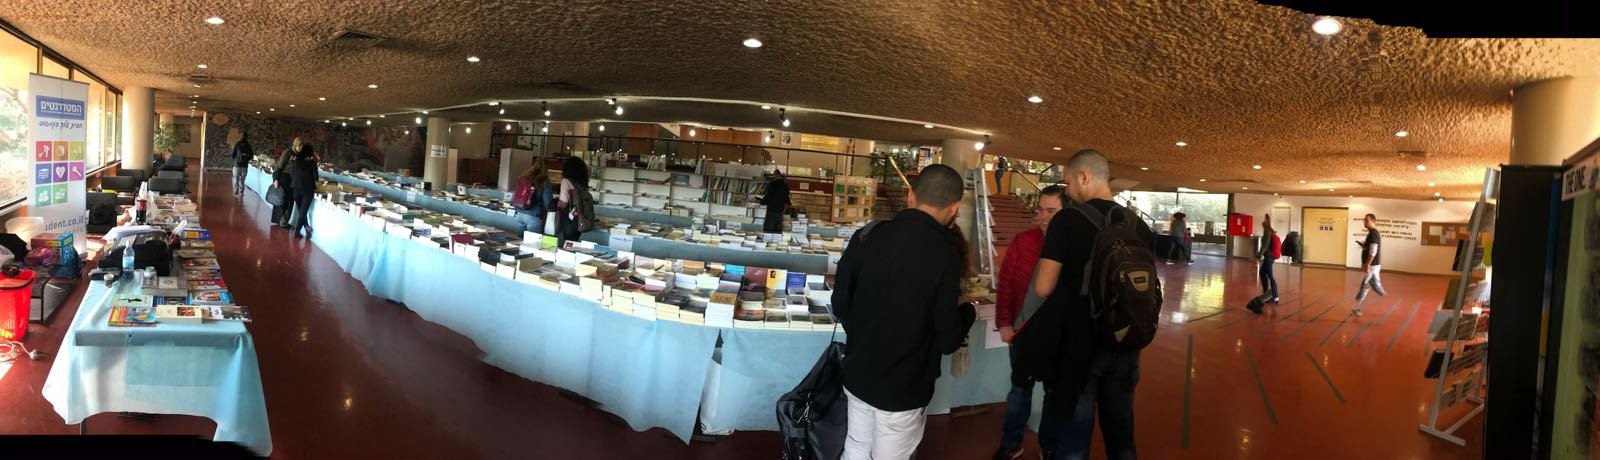 افتتاح اضخم معرض للكتاب في جامعة تل ابيب, مستمر حتى الخميس 11.1.18 -7